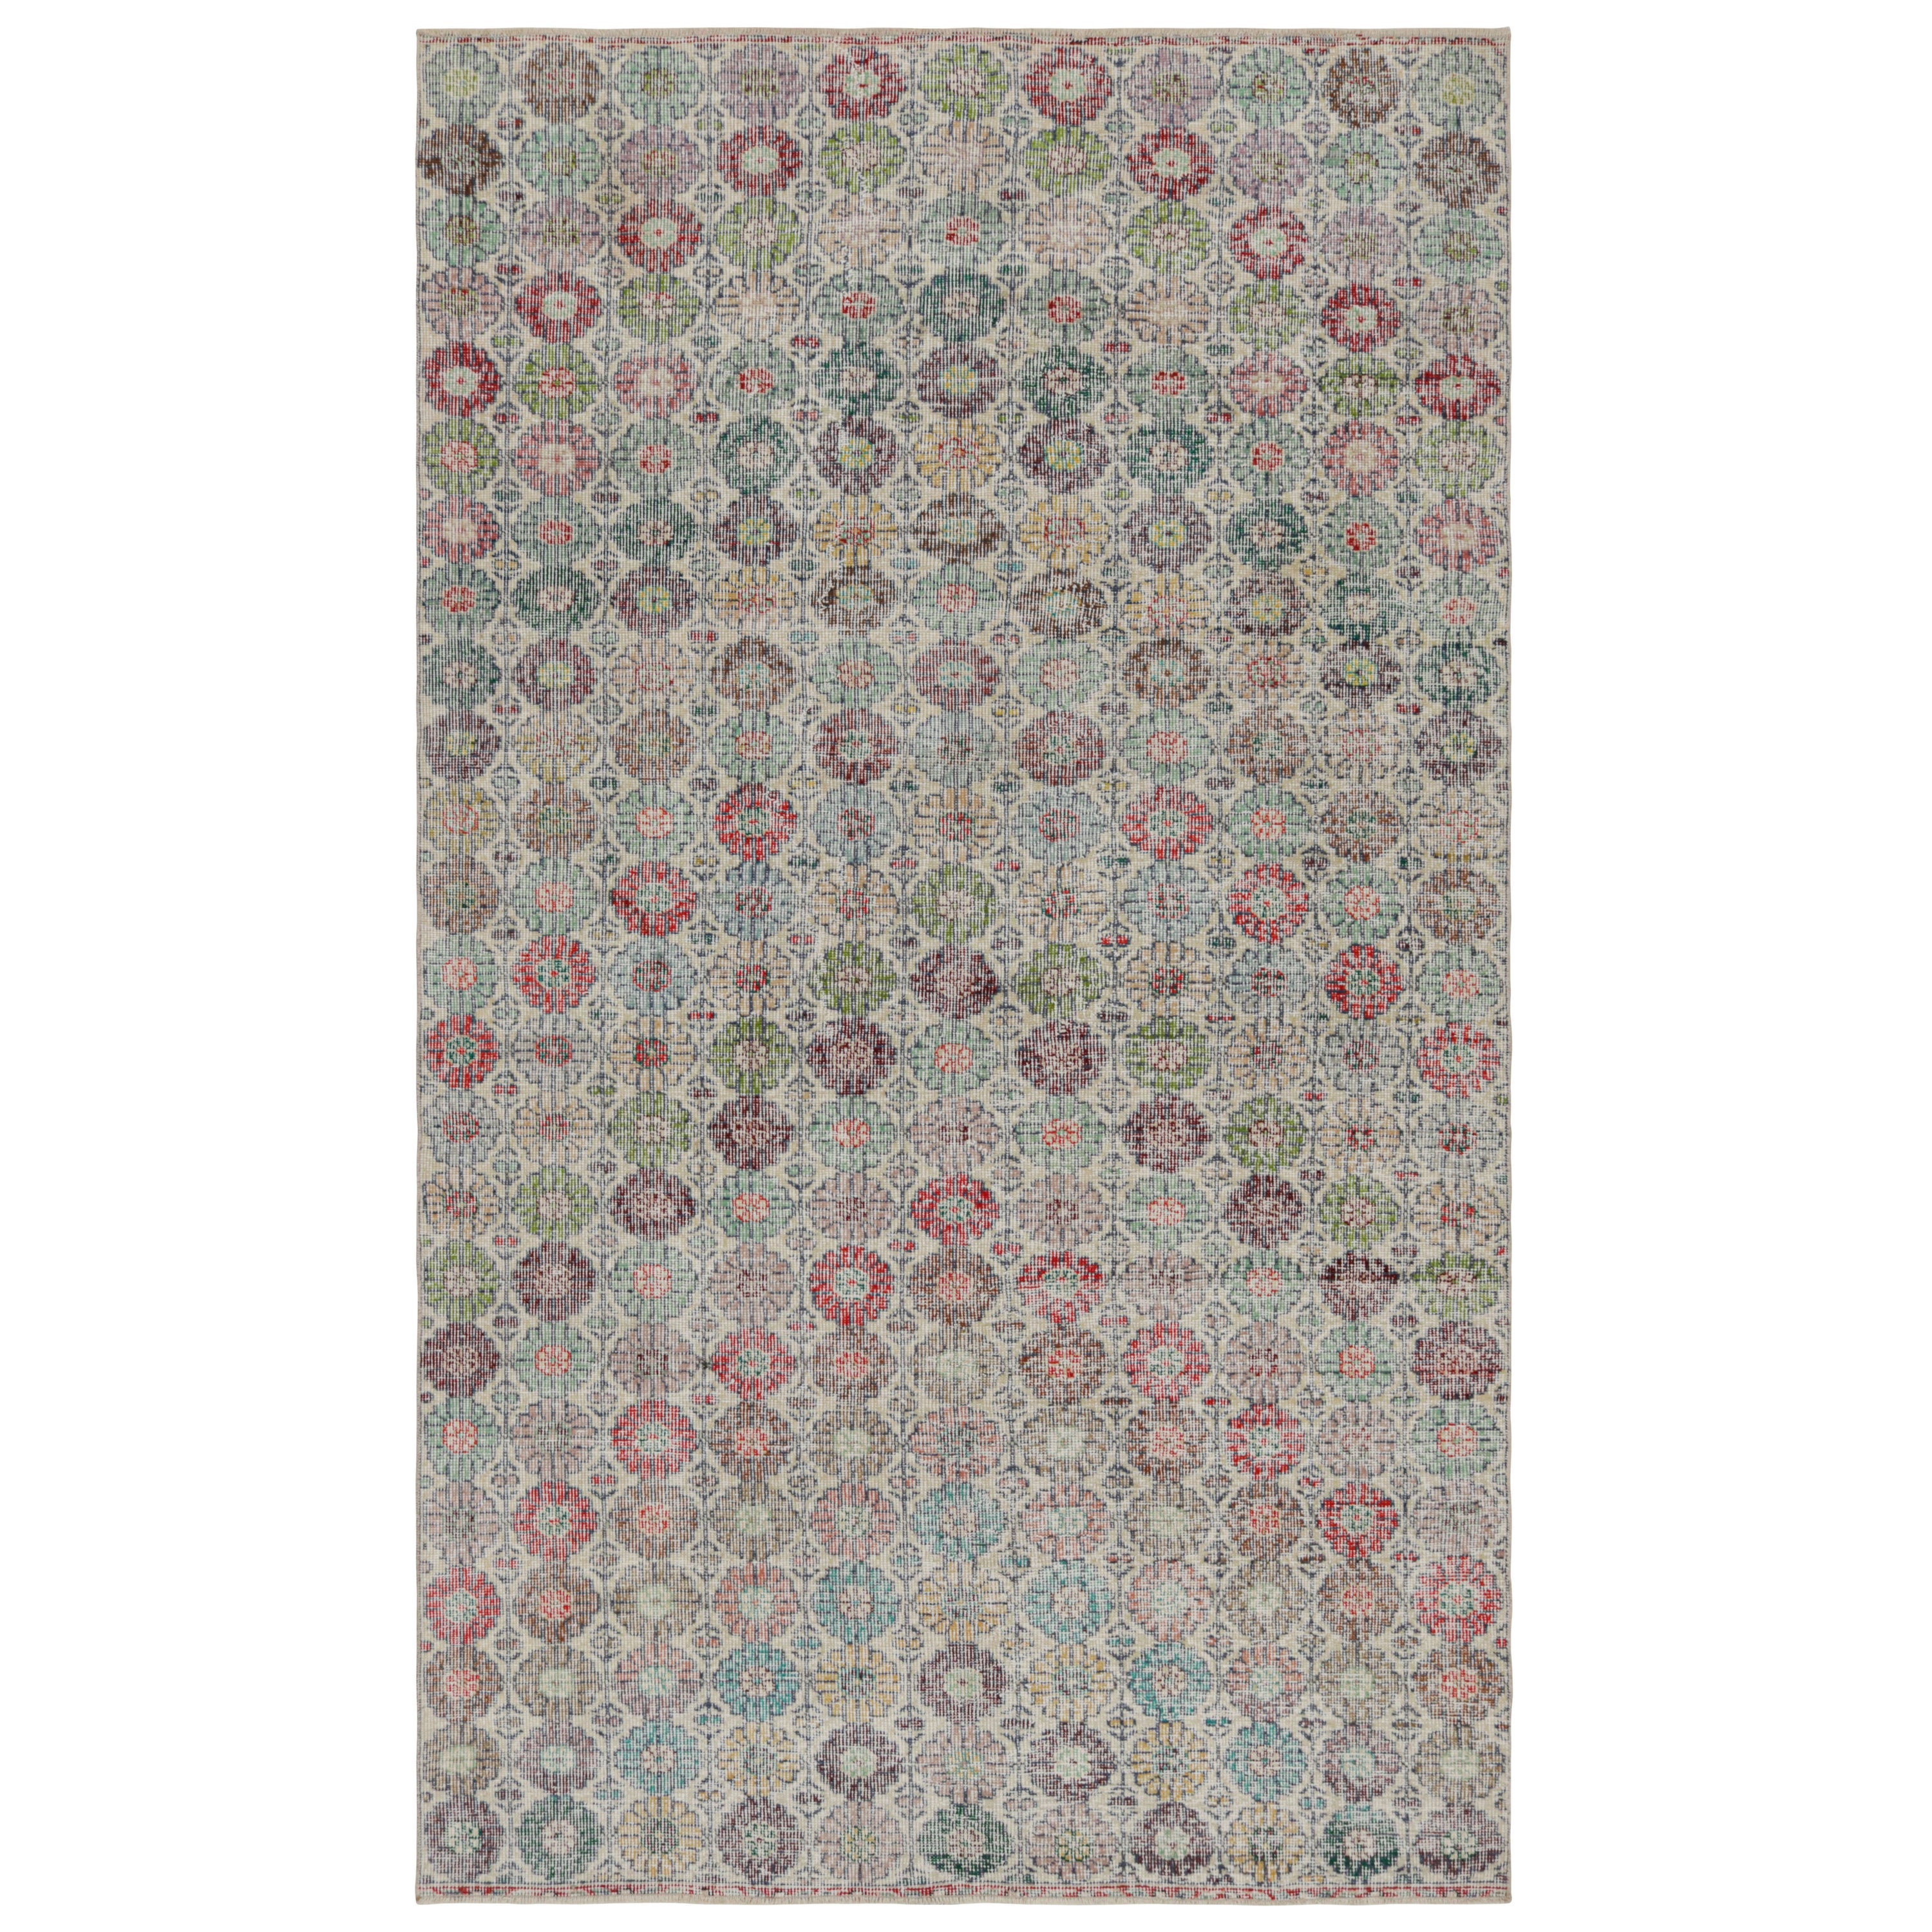 Vintage Zeki Müren Teppich mit polychromen Blumenmustern, von Rug & Kilim 